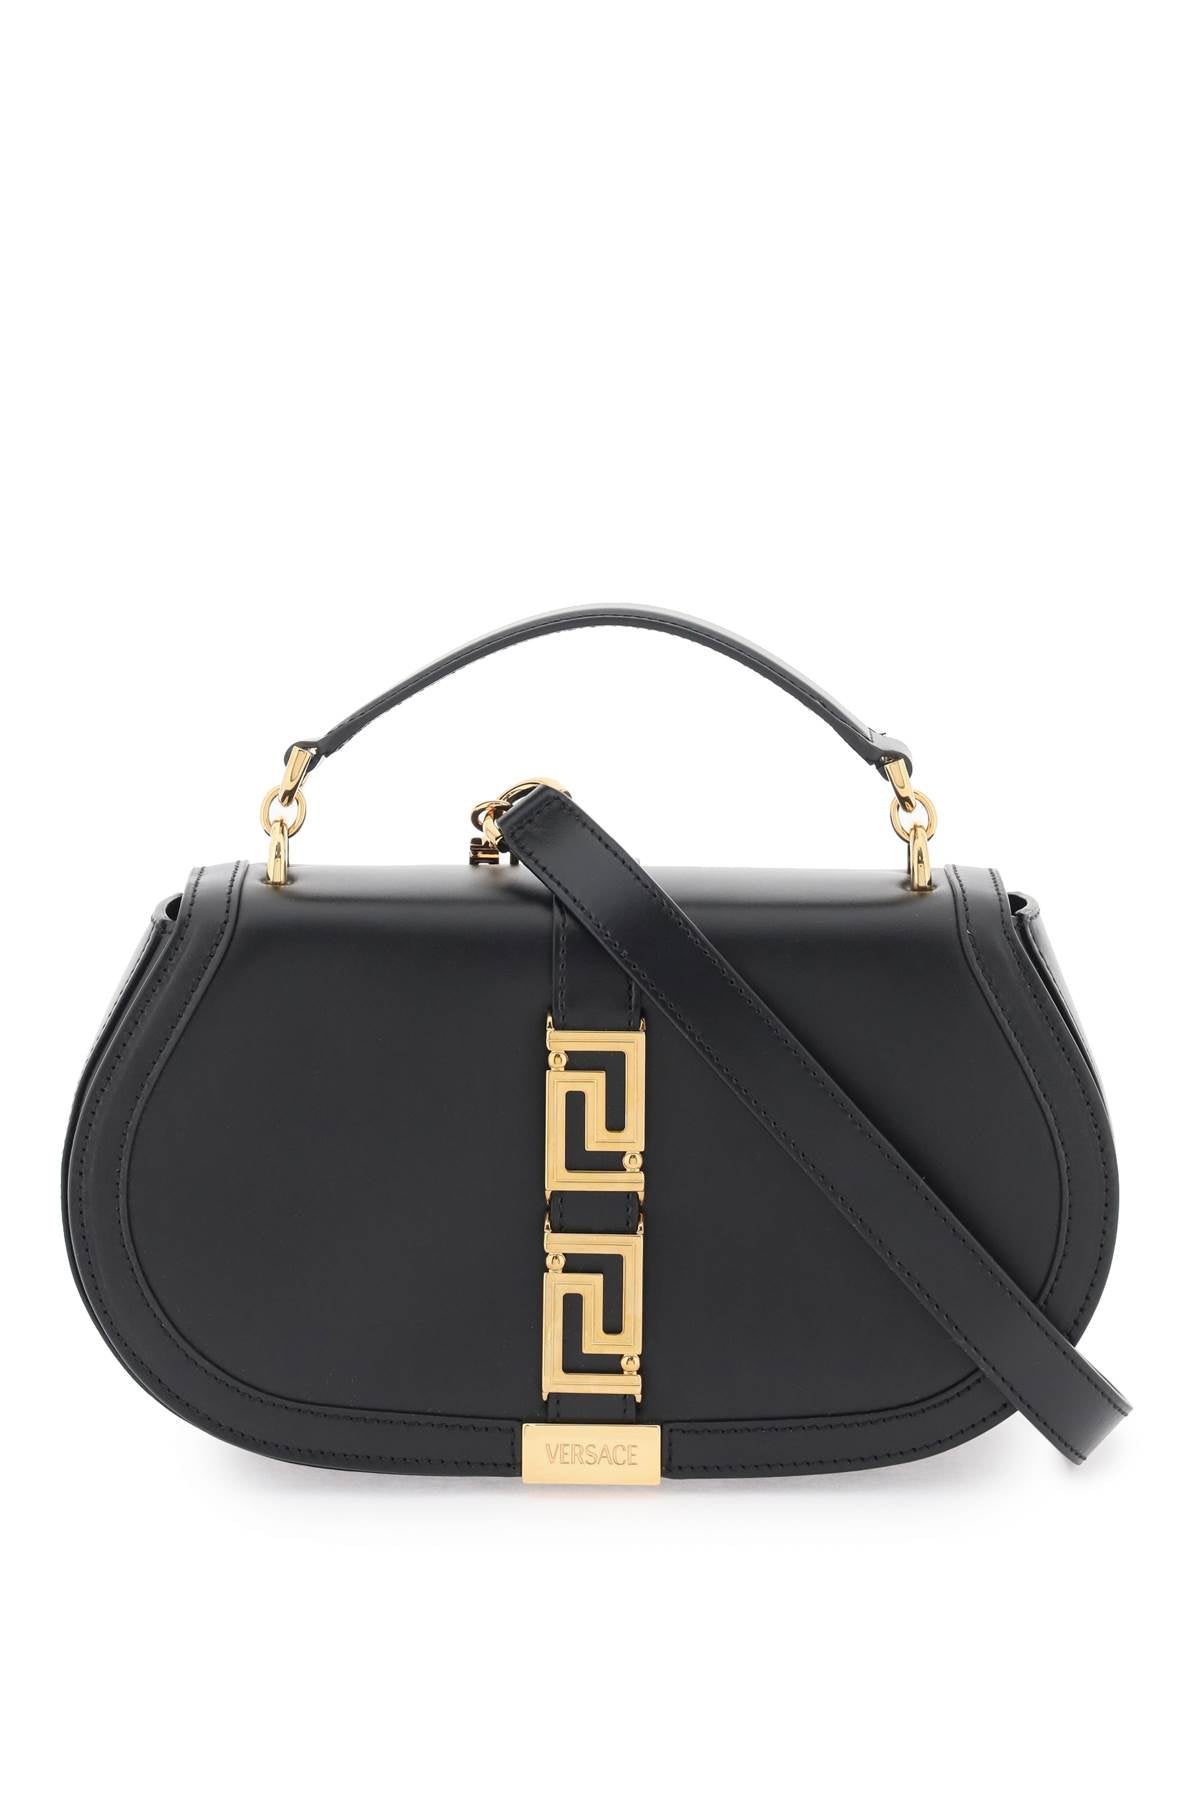 Versace 'greca goddess' shoulder bag 1011178 1A05134 BLACK VERSACE GOLD